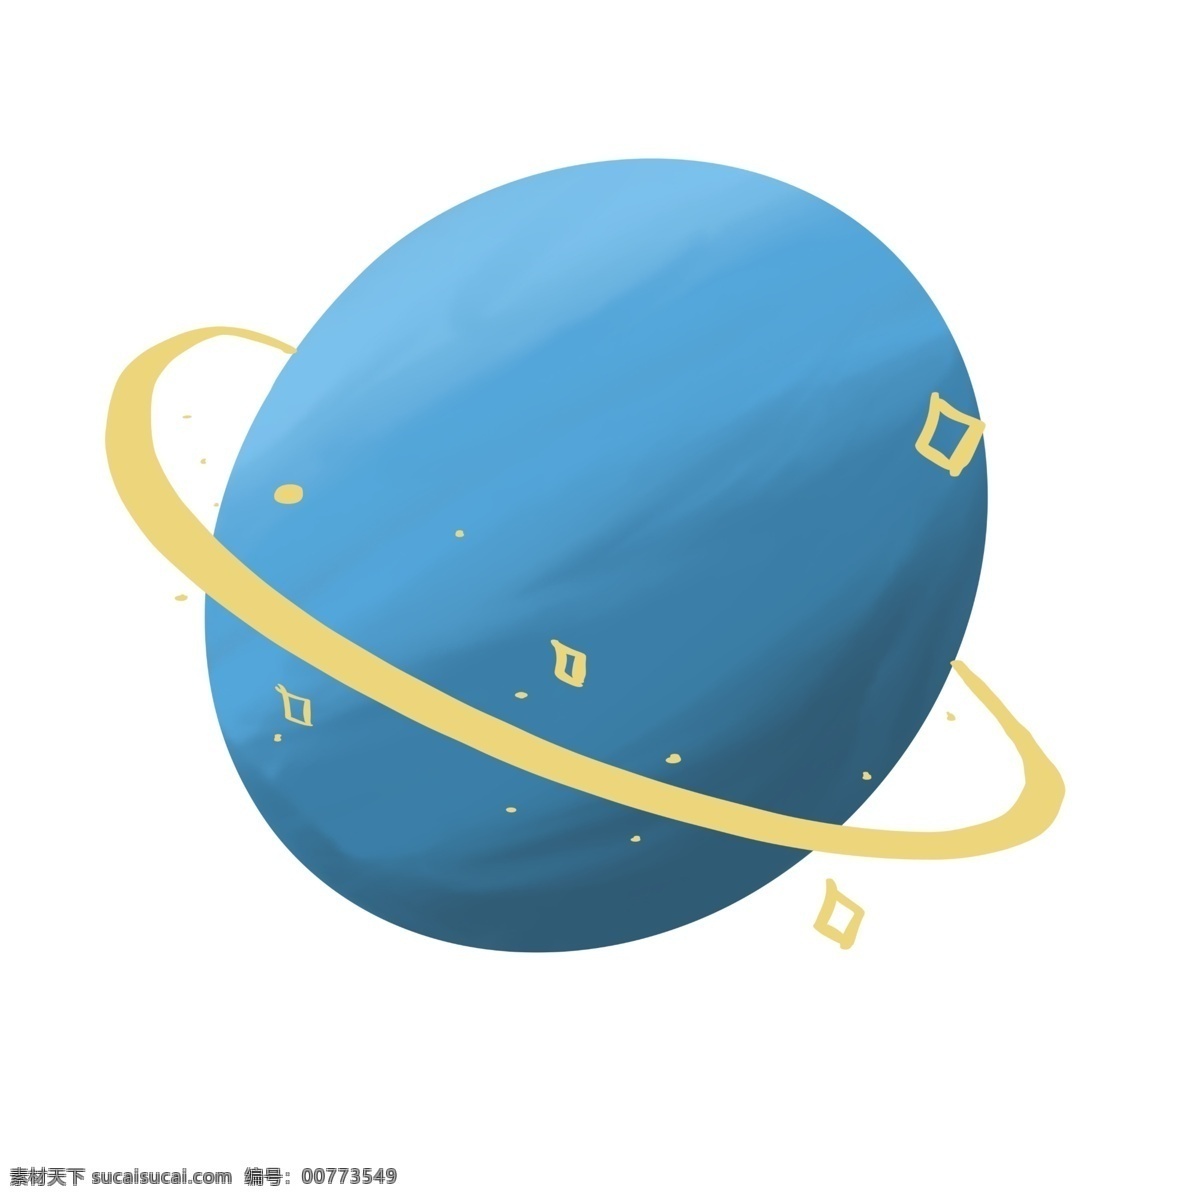 蓝色 手绘 圆 星球 元素 卡通 小星球 气球 手绘圆 蓝色小星球 简单 简约 可爱 简单手绘